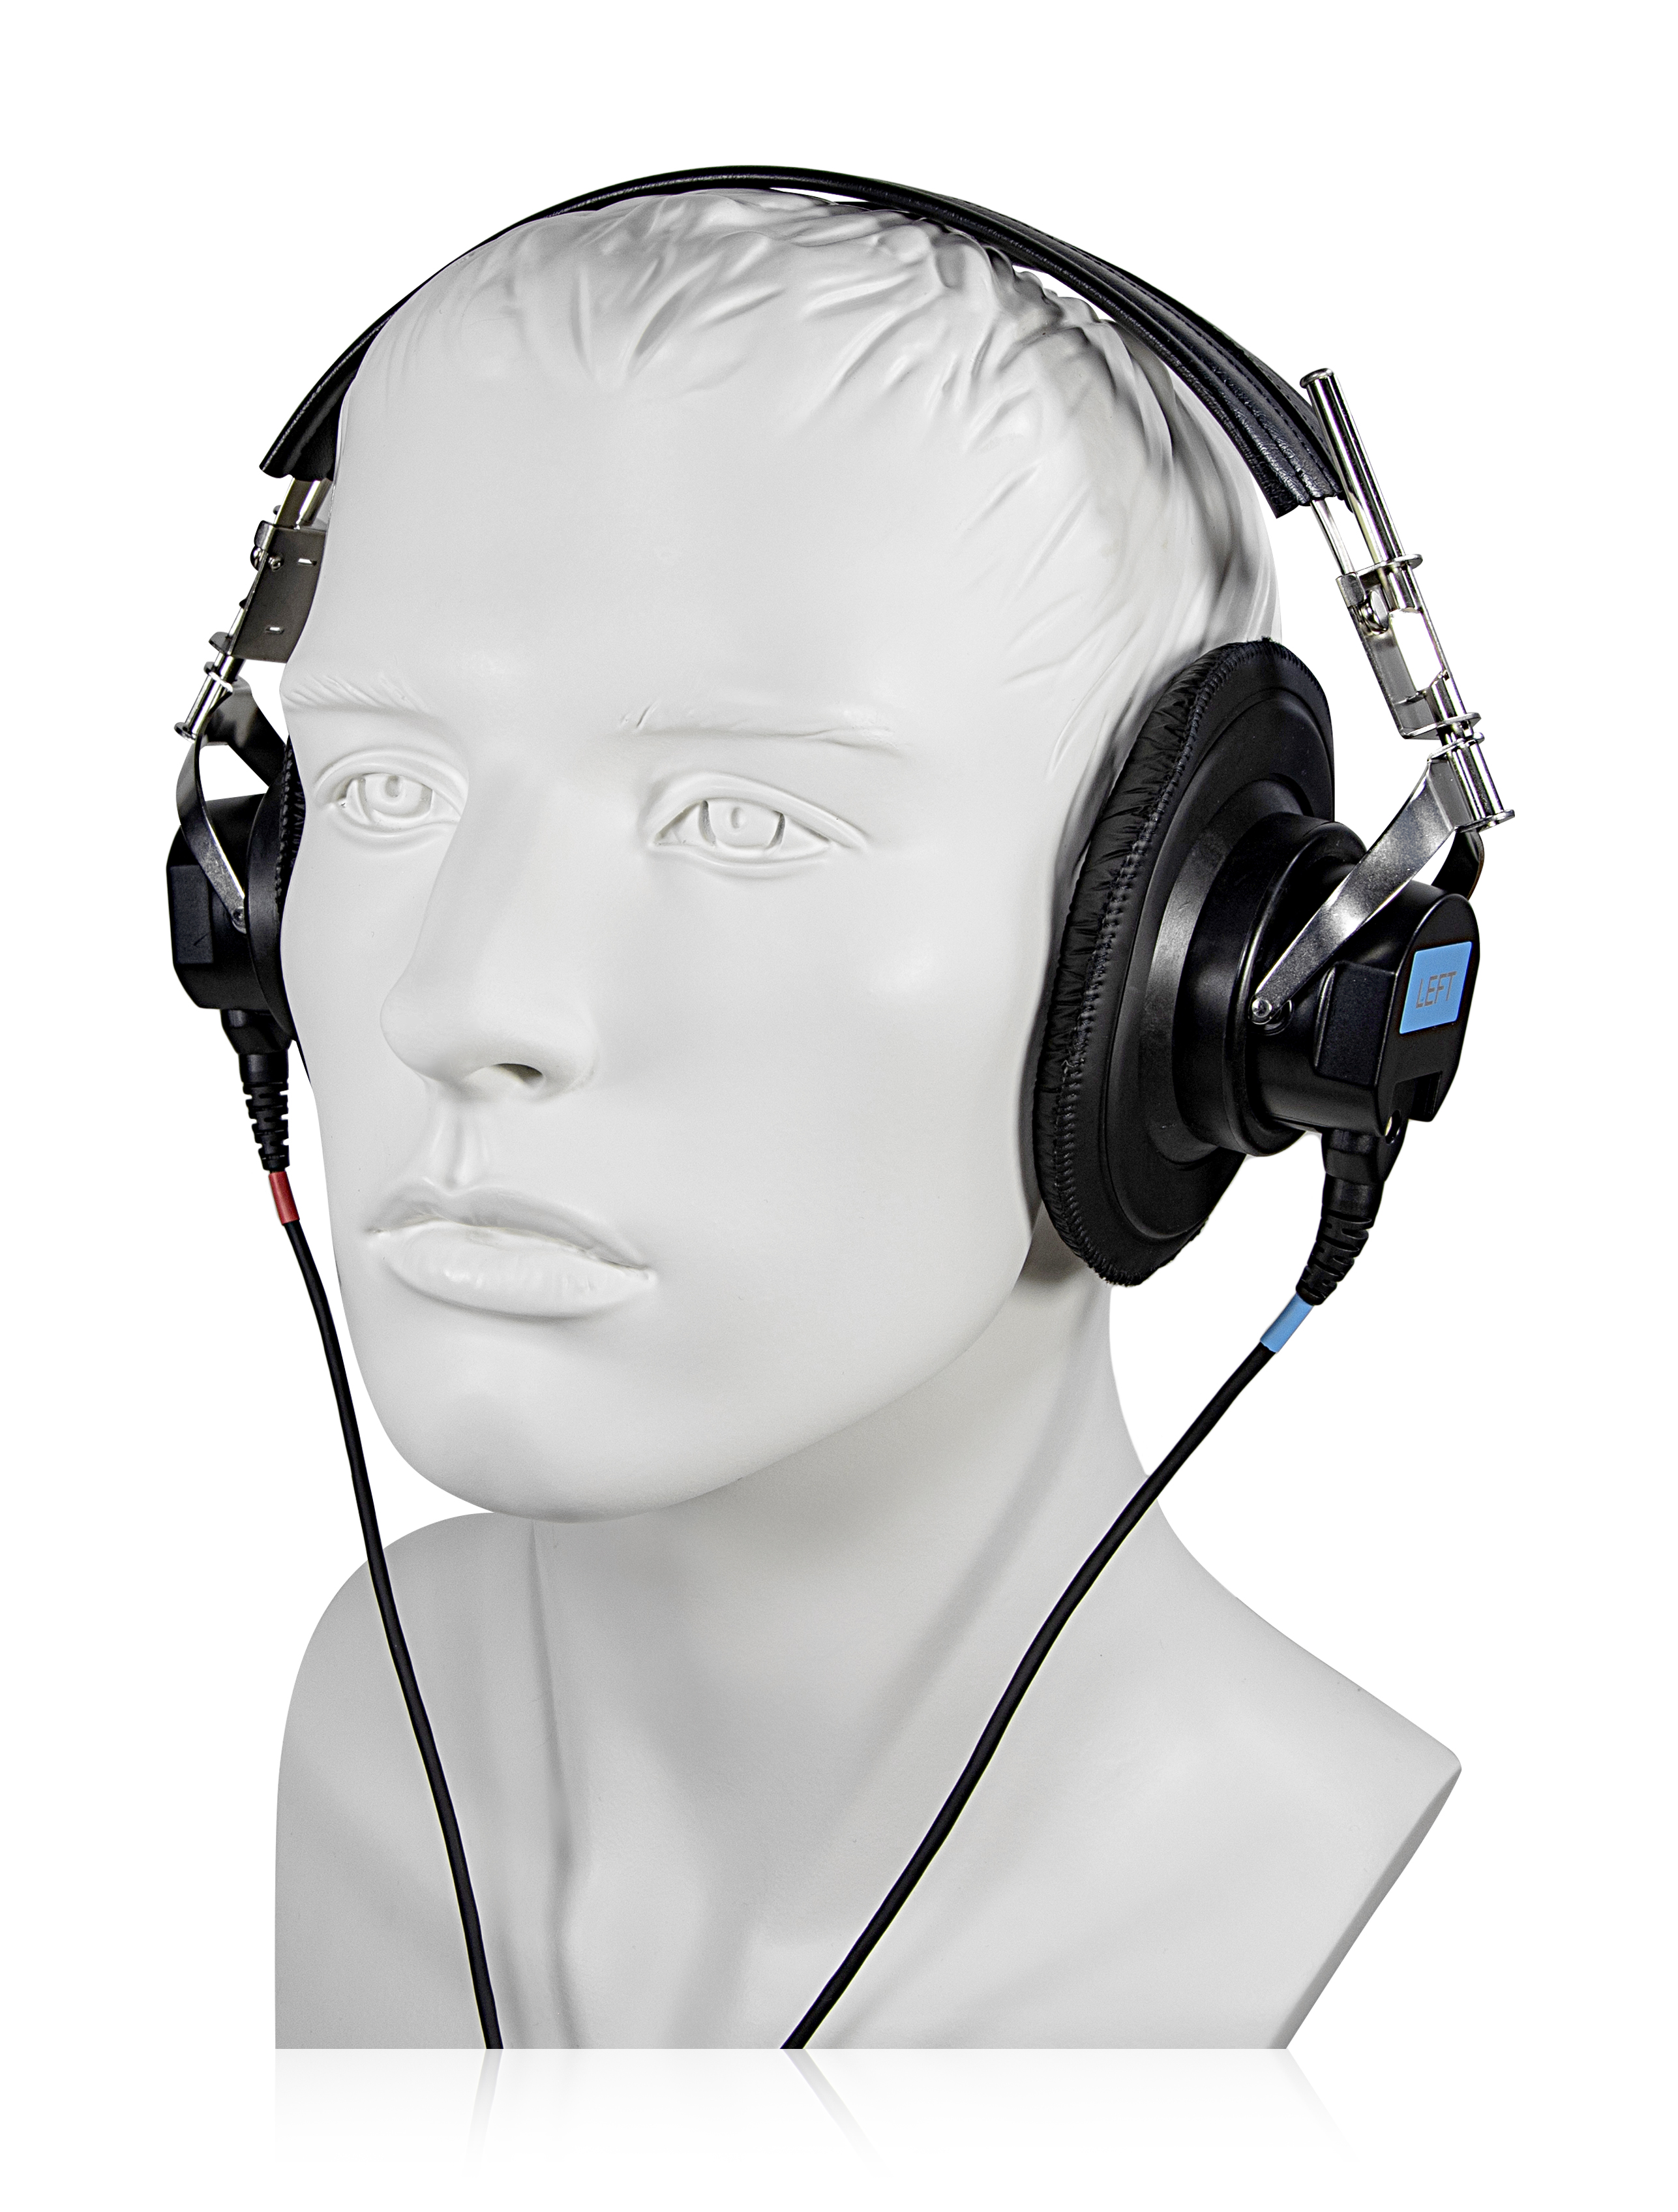 Kopfhörer zur akustischen Stimulation für Kinder